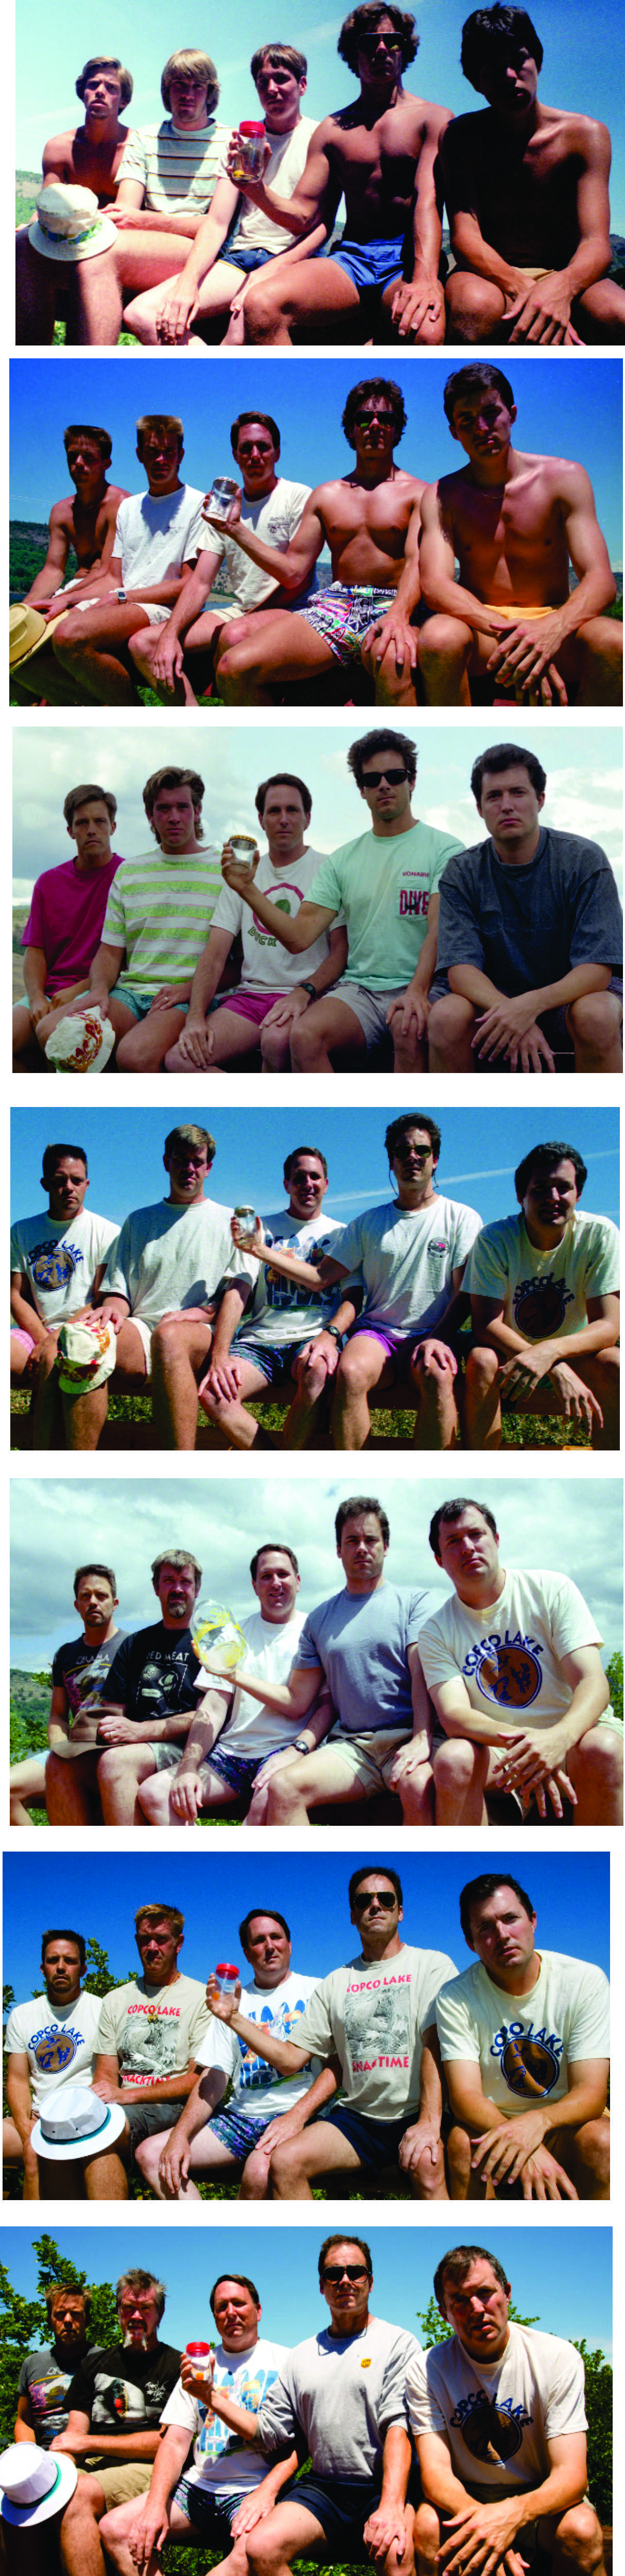 Cinco amigos se han tomado la misma fotografía durante 30 años